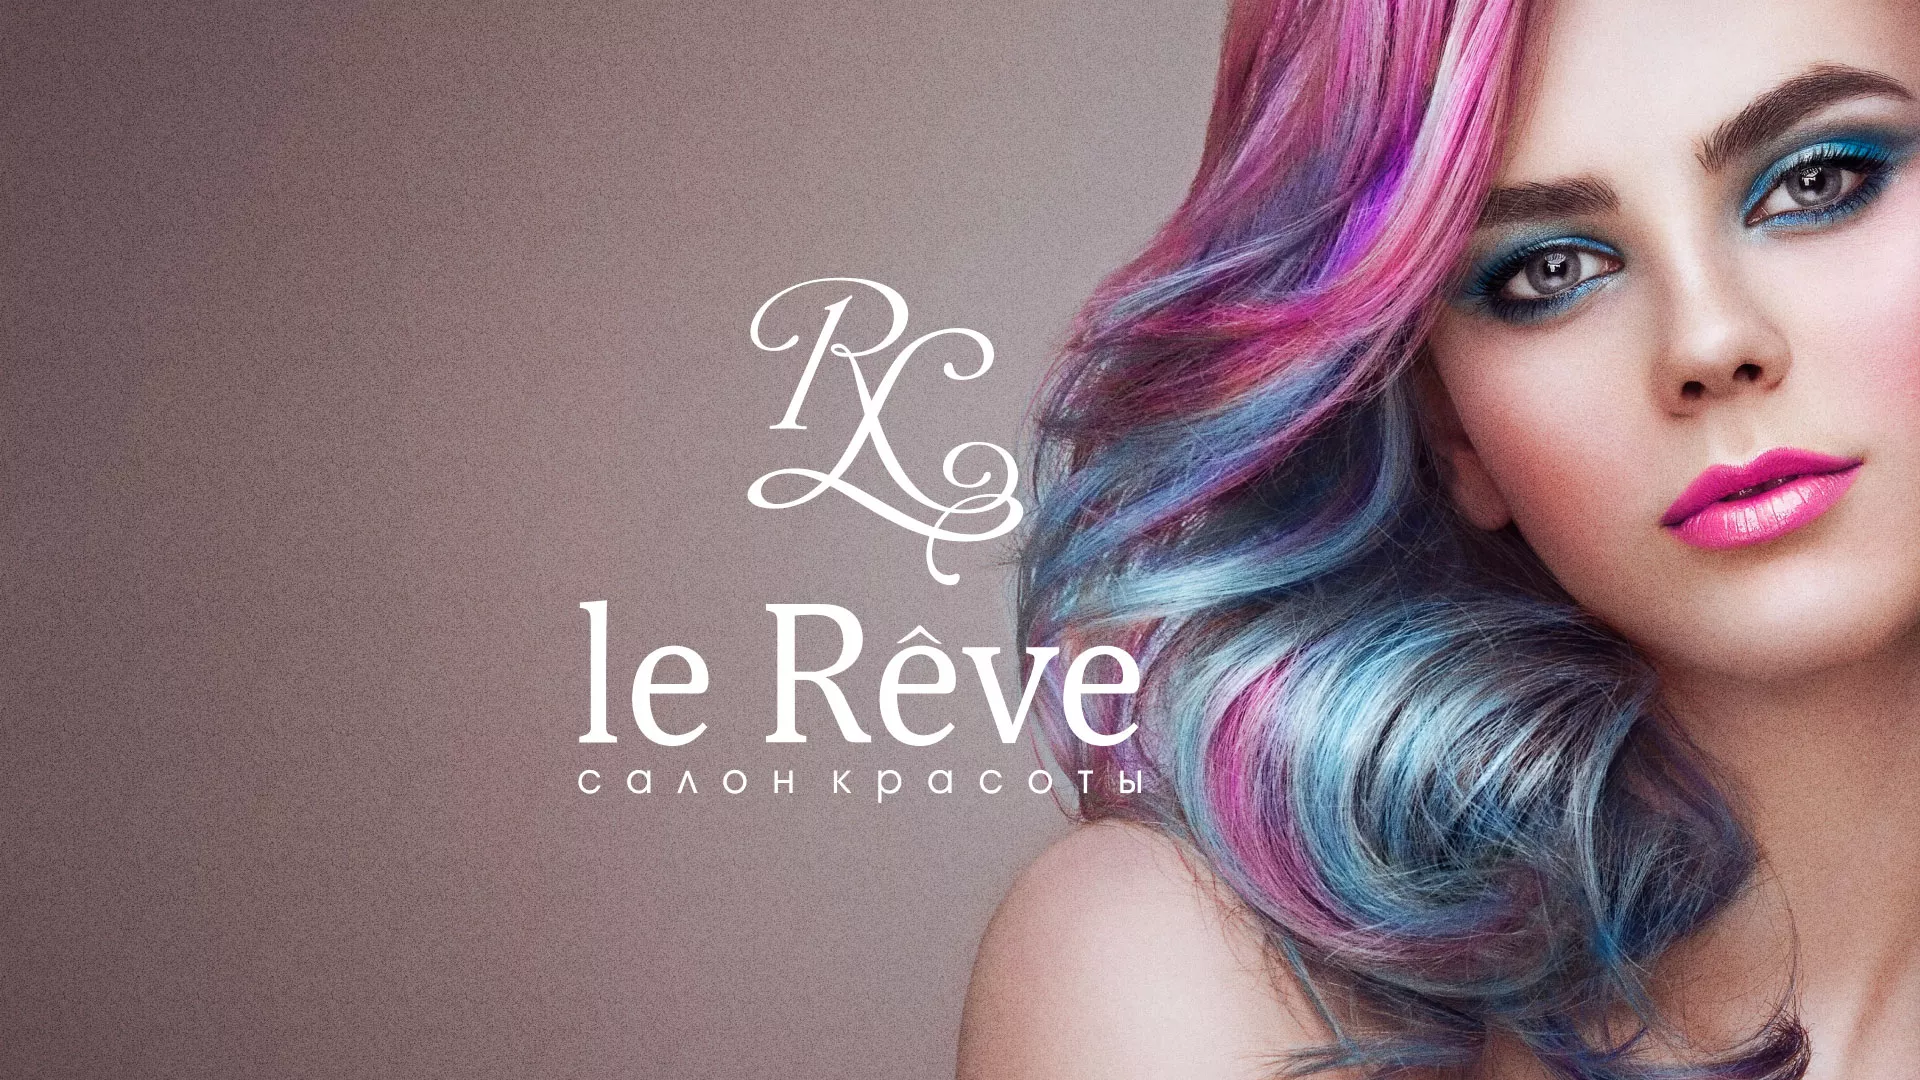 Создание сайта для салона красоты «Le Reve» в Зиме